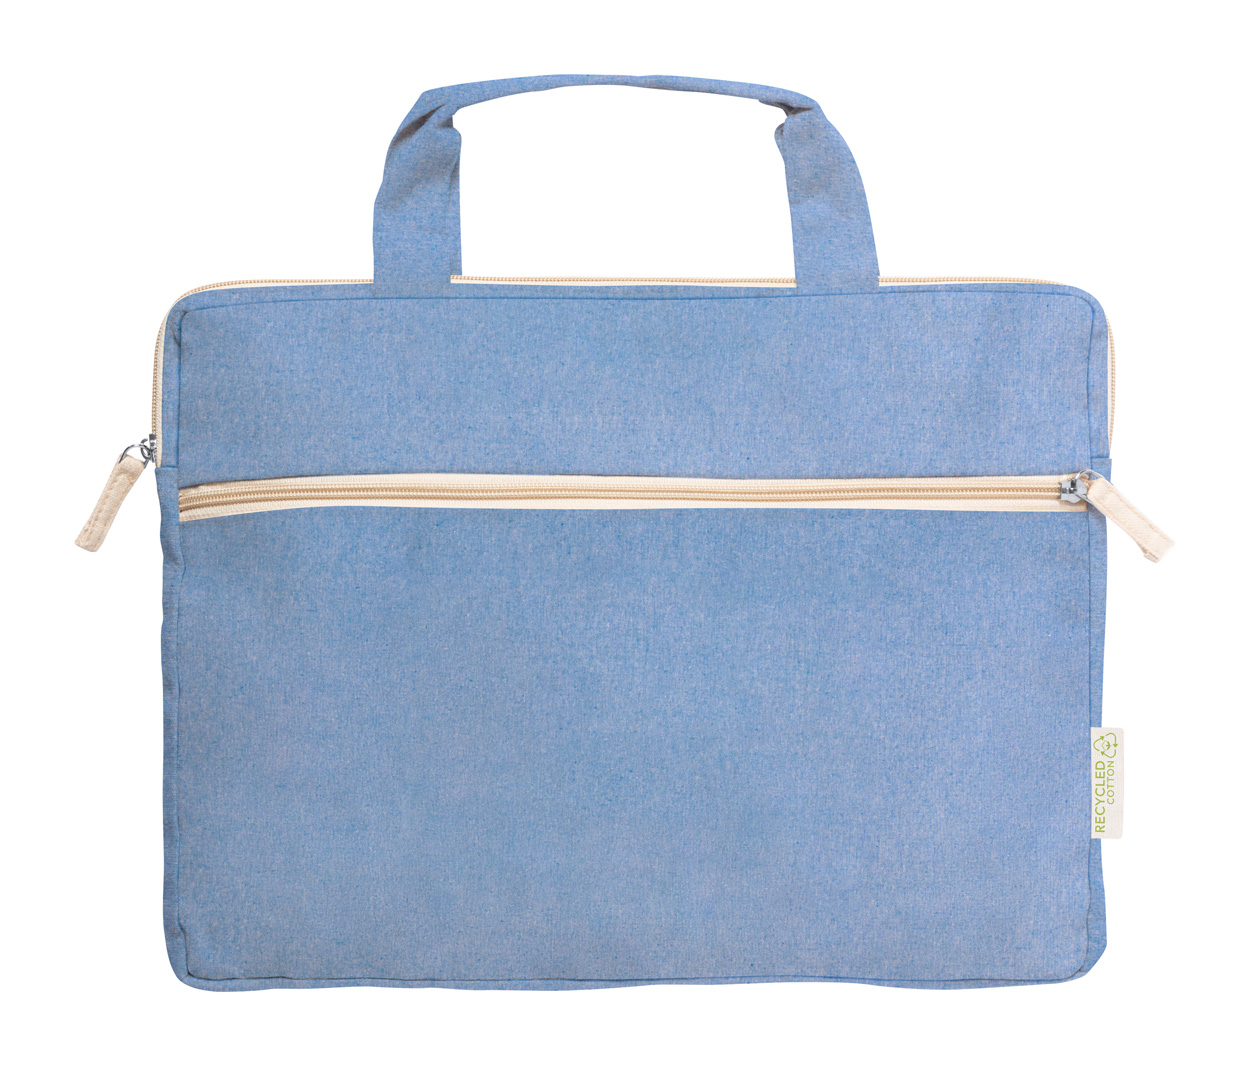 Baiplur cotton document bag - blue